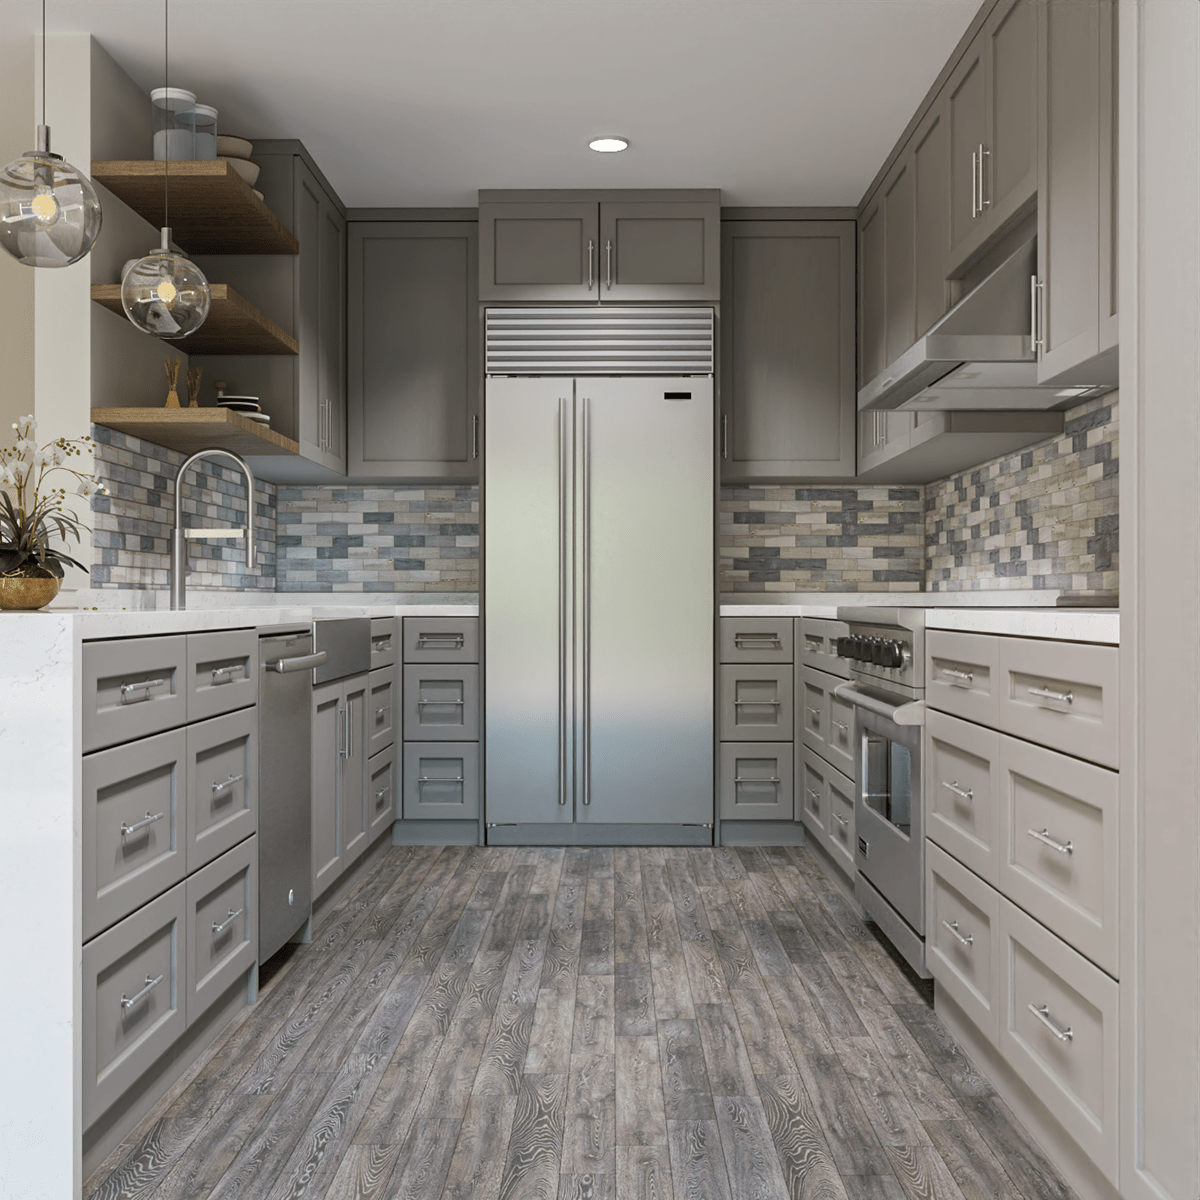 cabinetry kitchen Interior architecture Render visualization 3ds max corona vray CGI